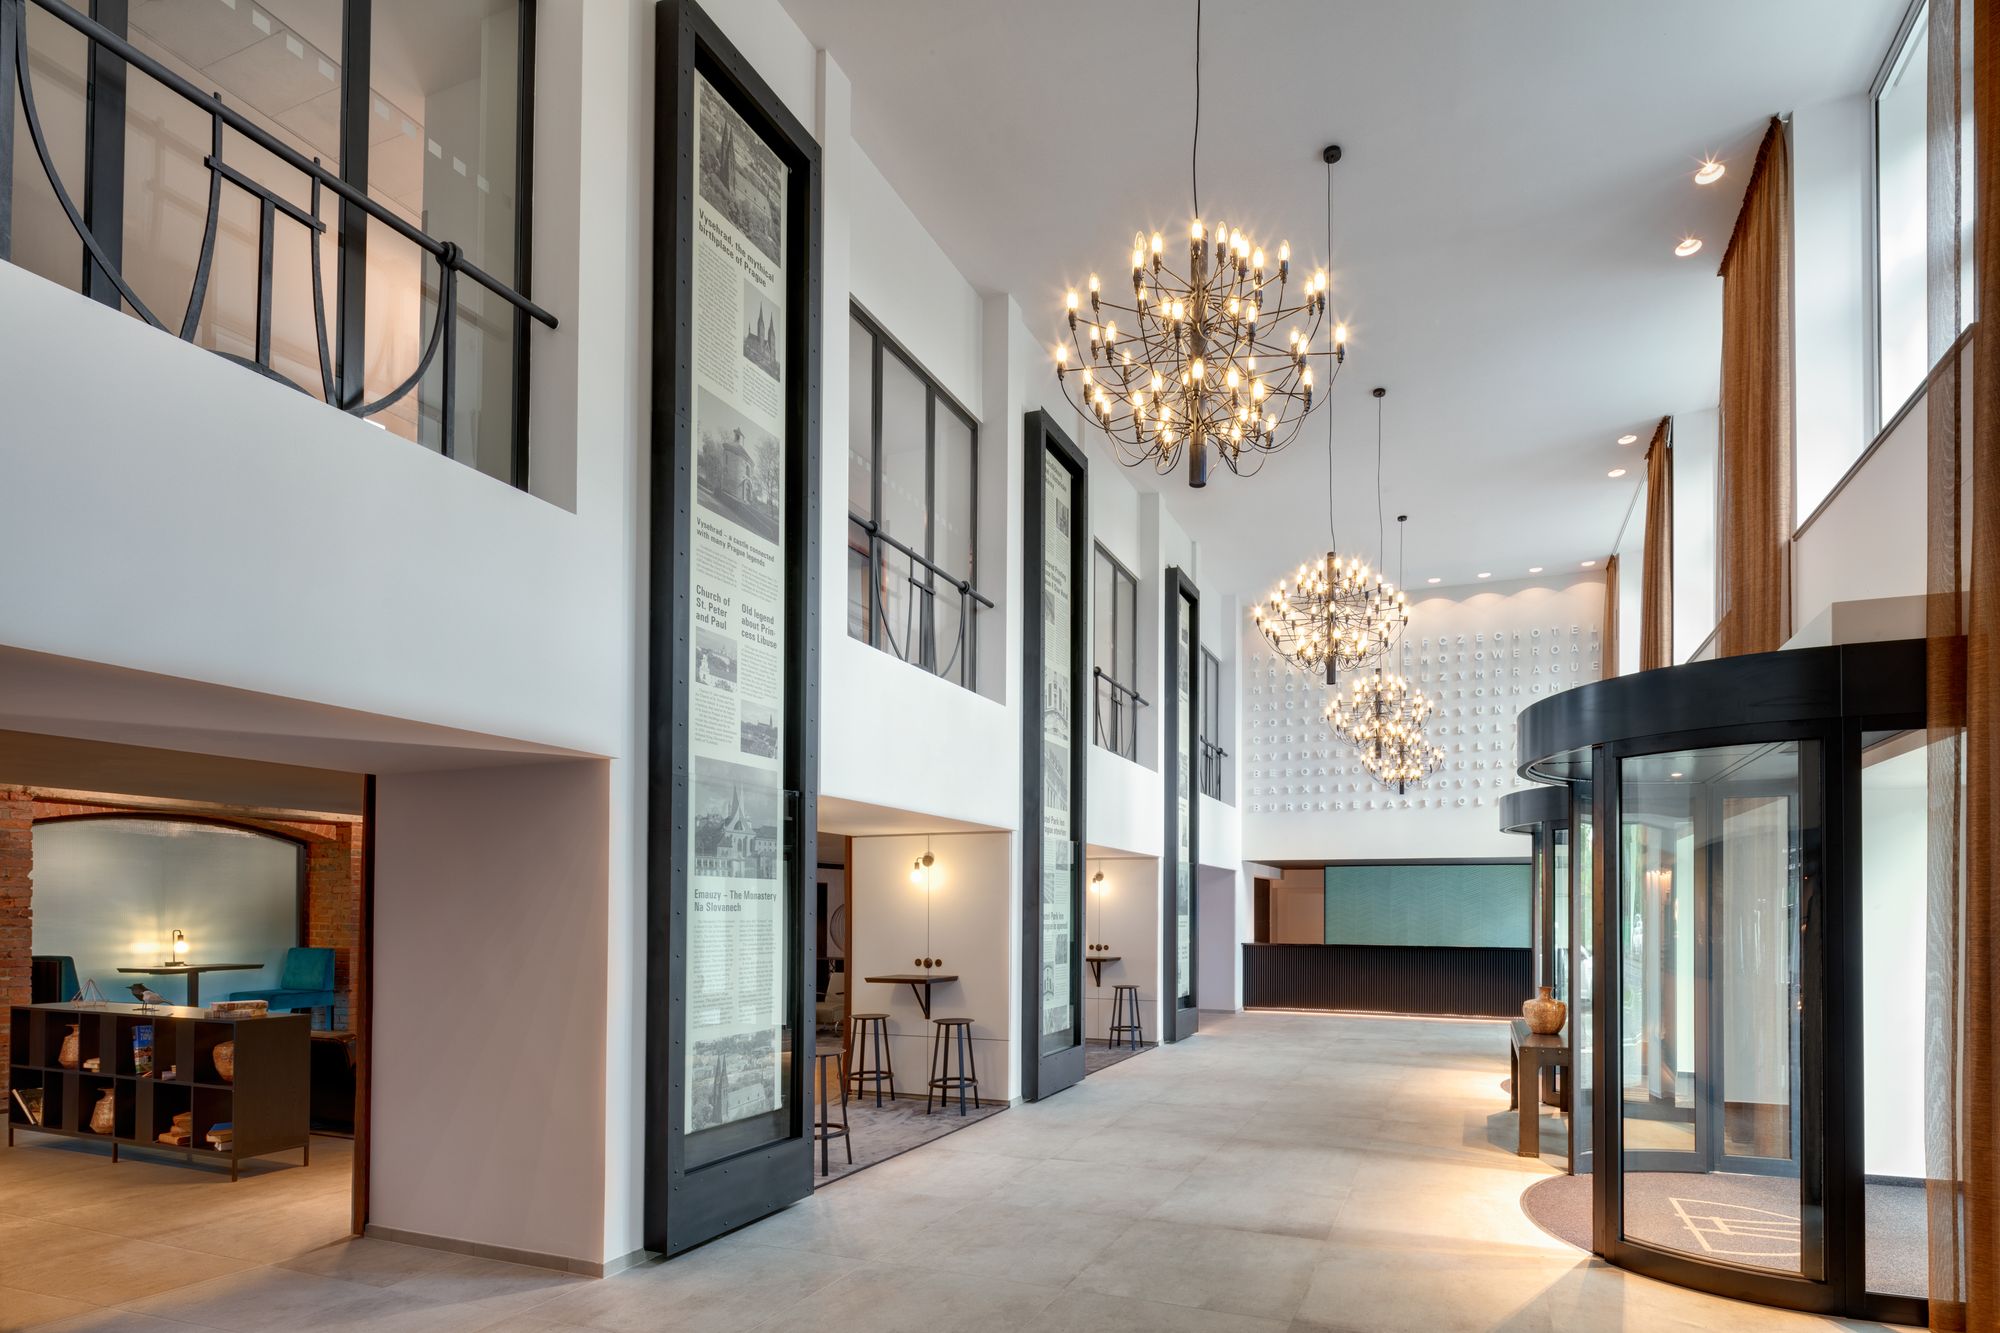 布拉格埃尔米塔什酒店|ART-Arrakis | 建筑室内设计的创新与灵感